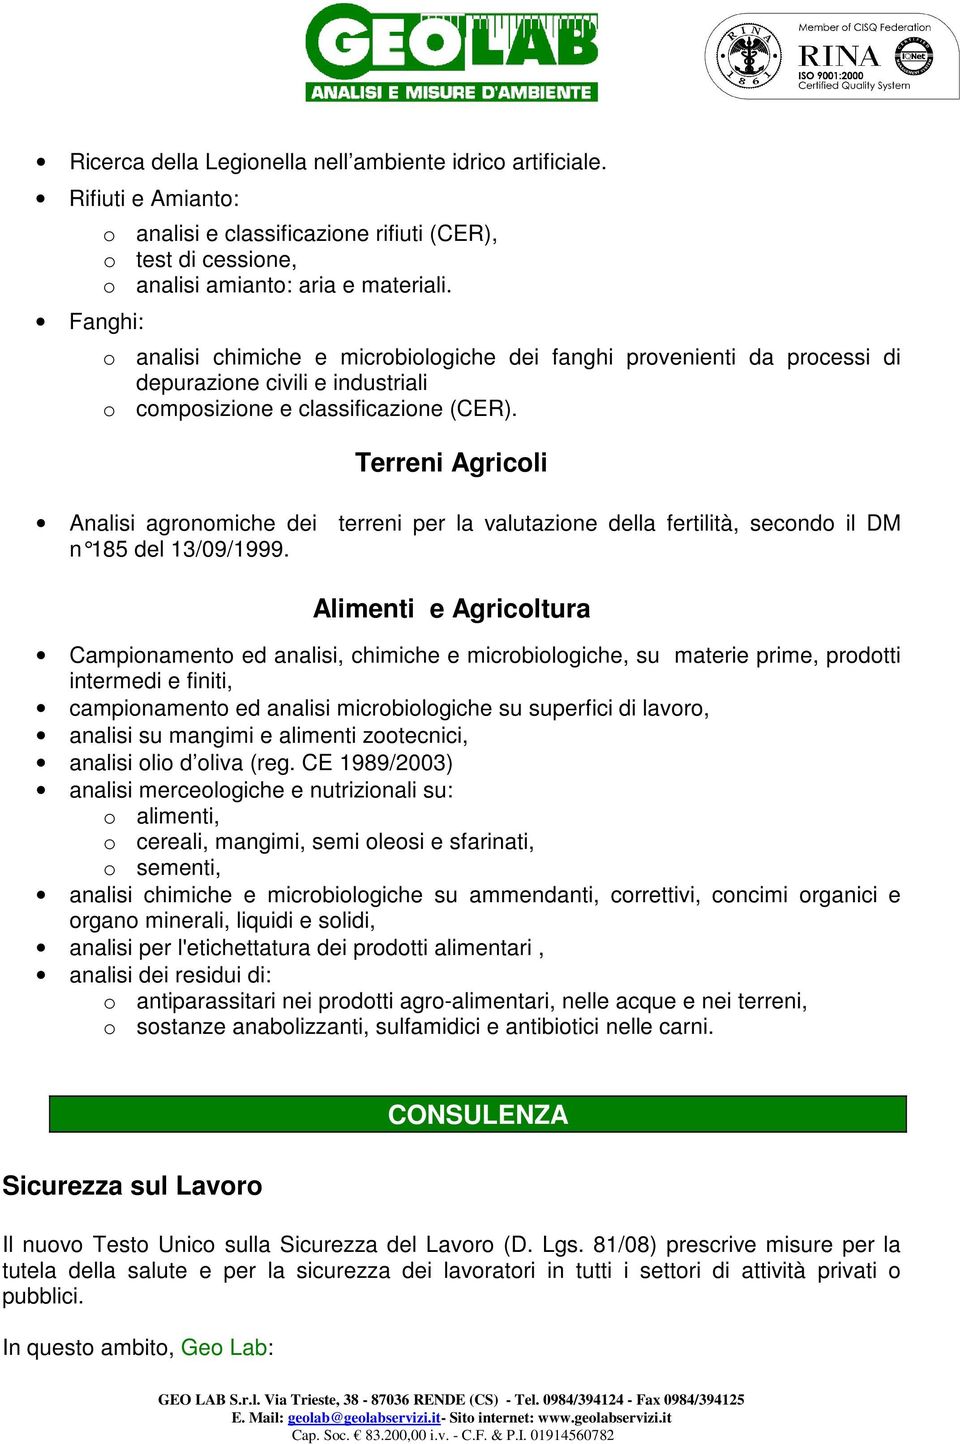 Terreni Agricoli Analisi agronomiche dei terreni per la valutazione della fertilità, secondo il DM n 185 del 13/09/1999.